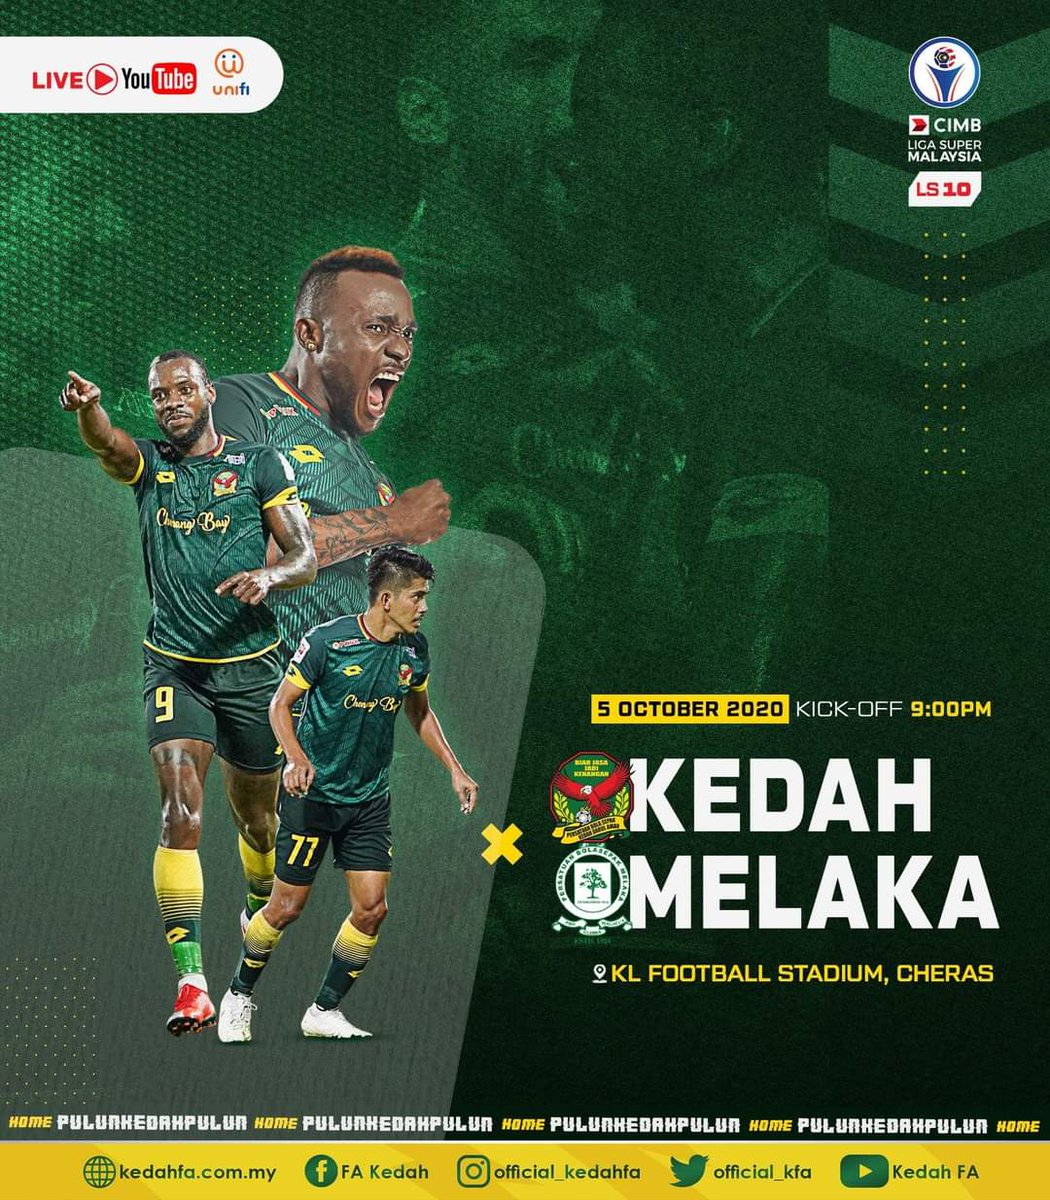 Melaka live vs kedah Live Streaming